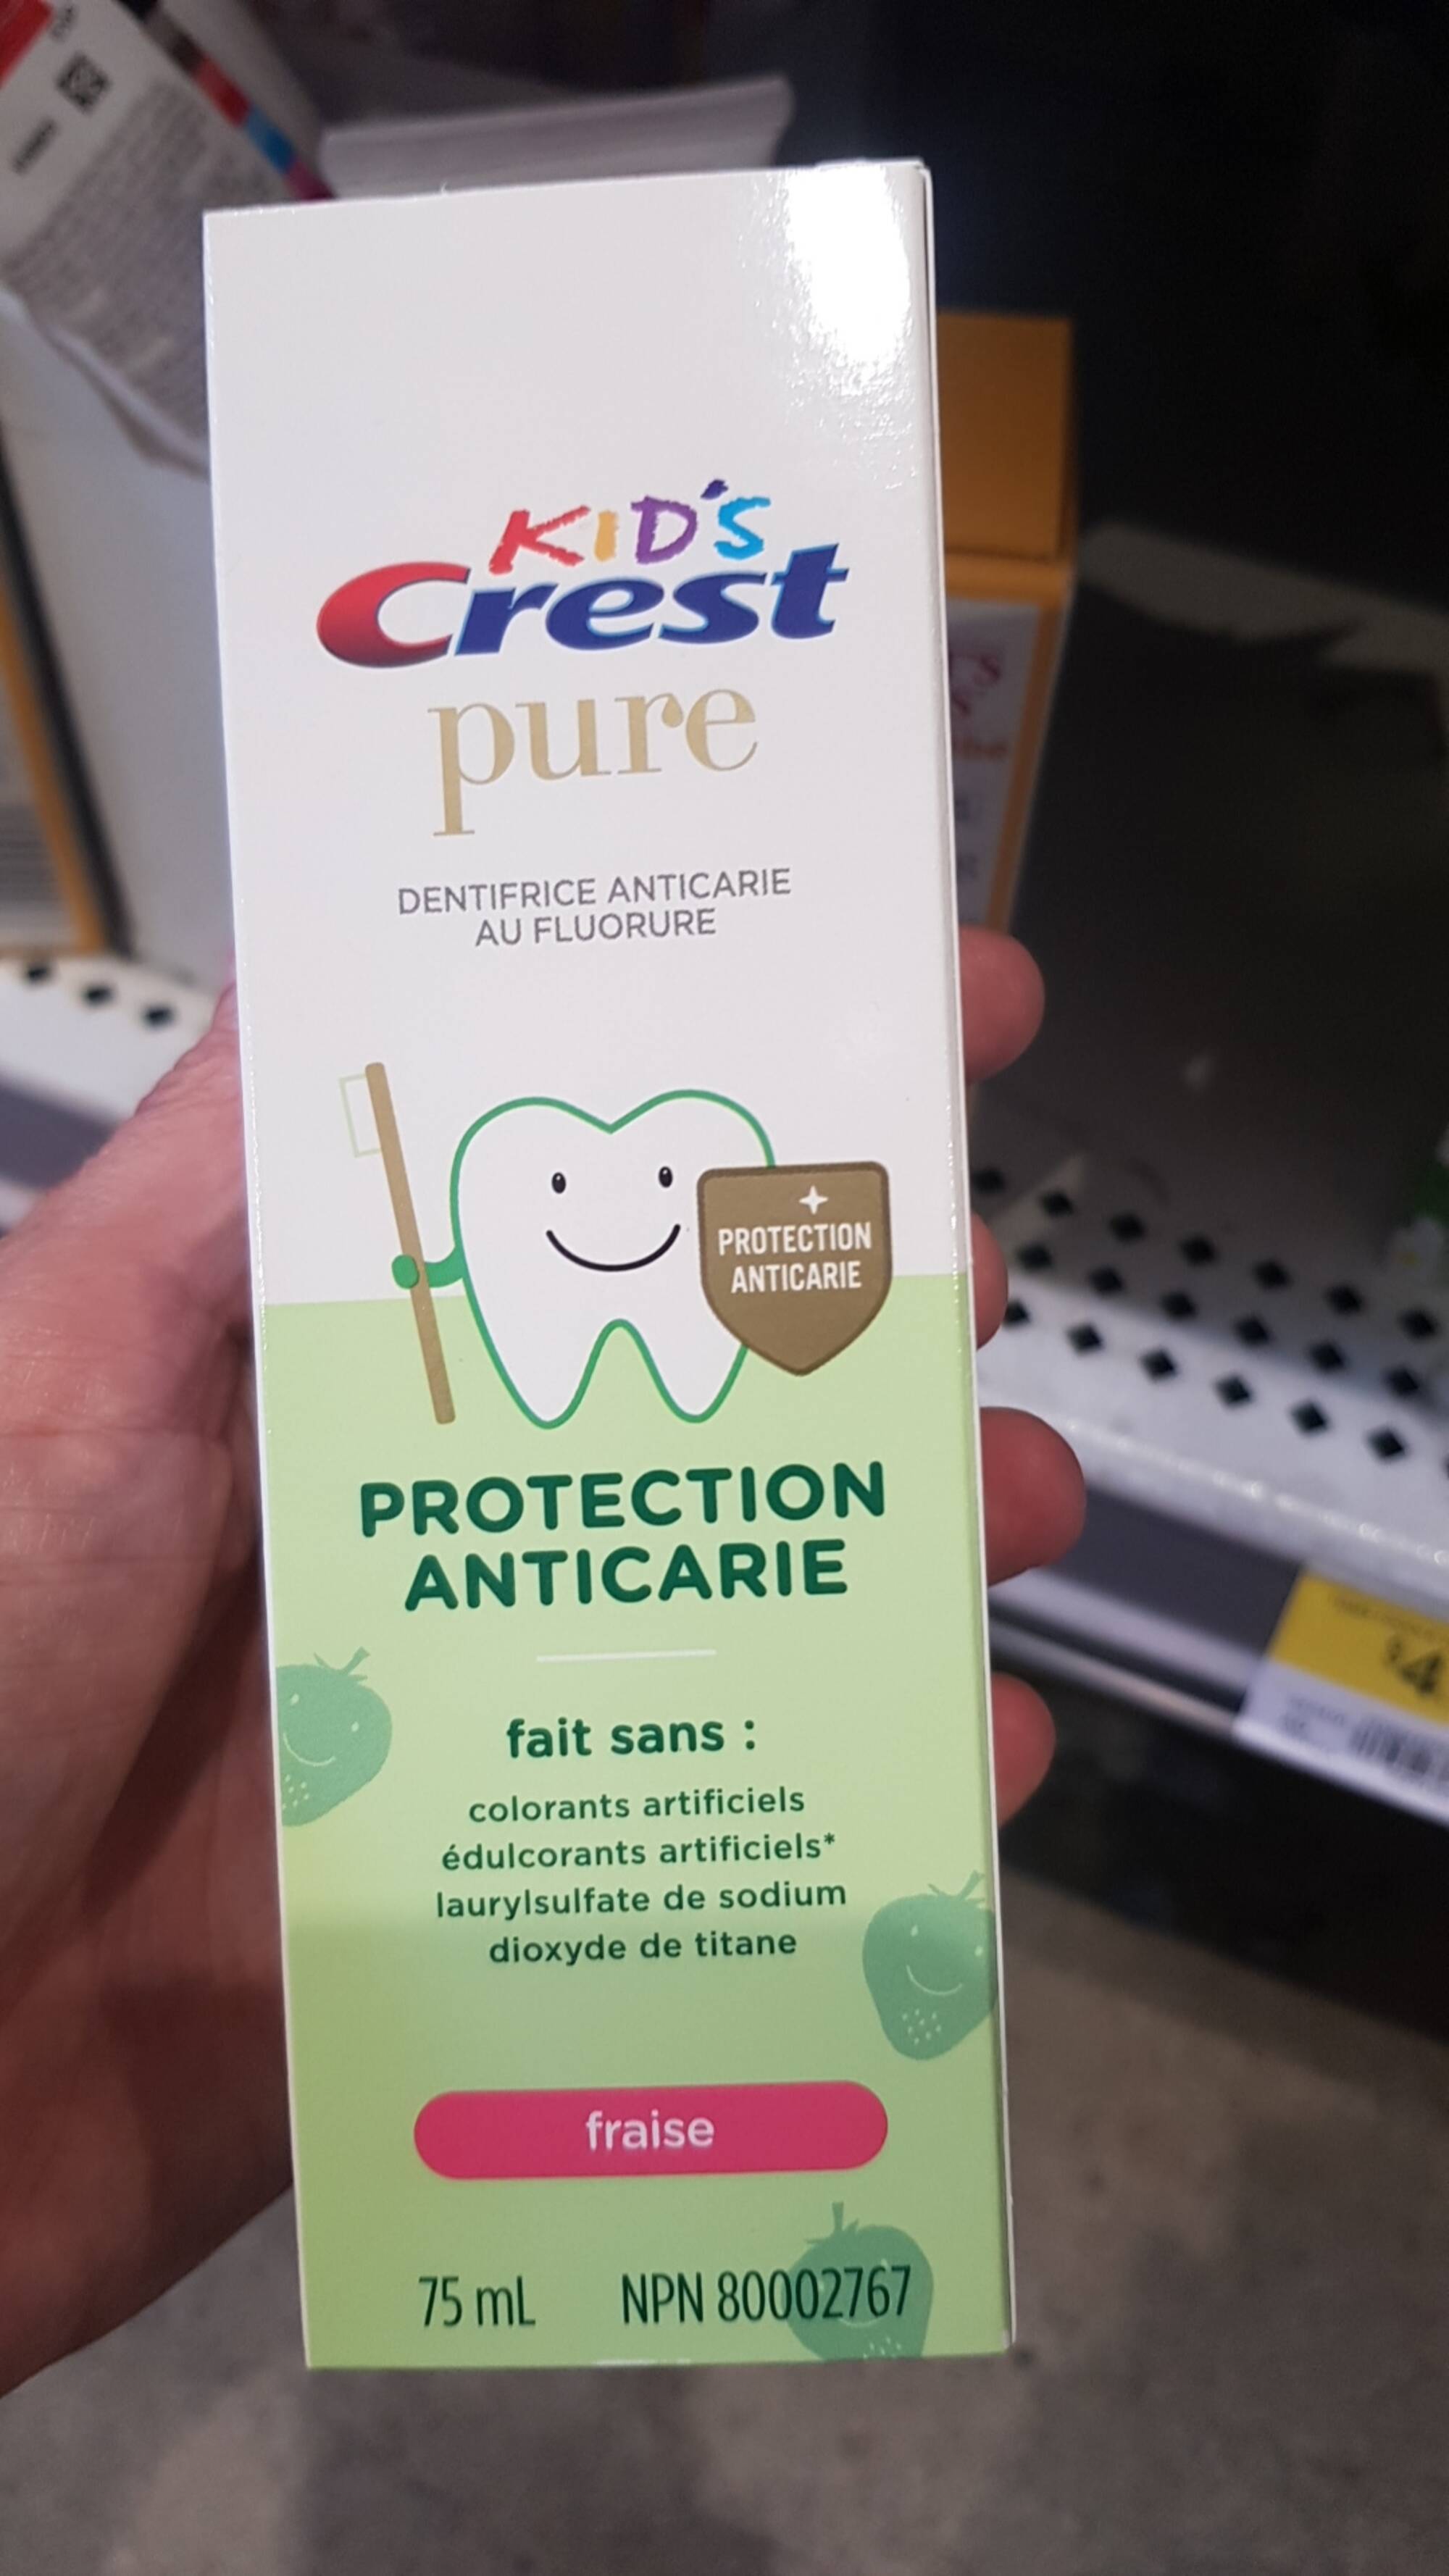 CREST - Kids - Pure dentifrice anticarie au fluorure